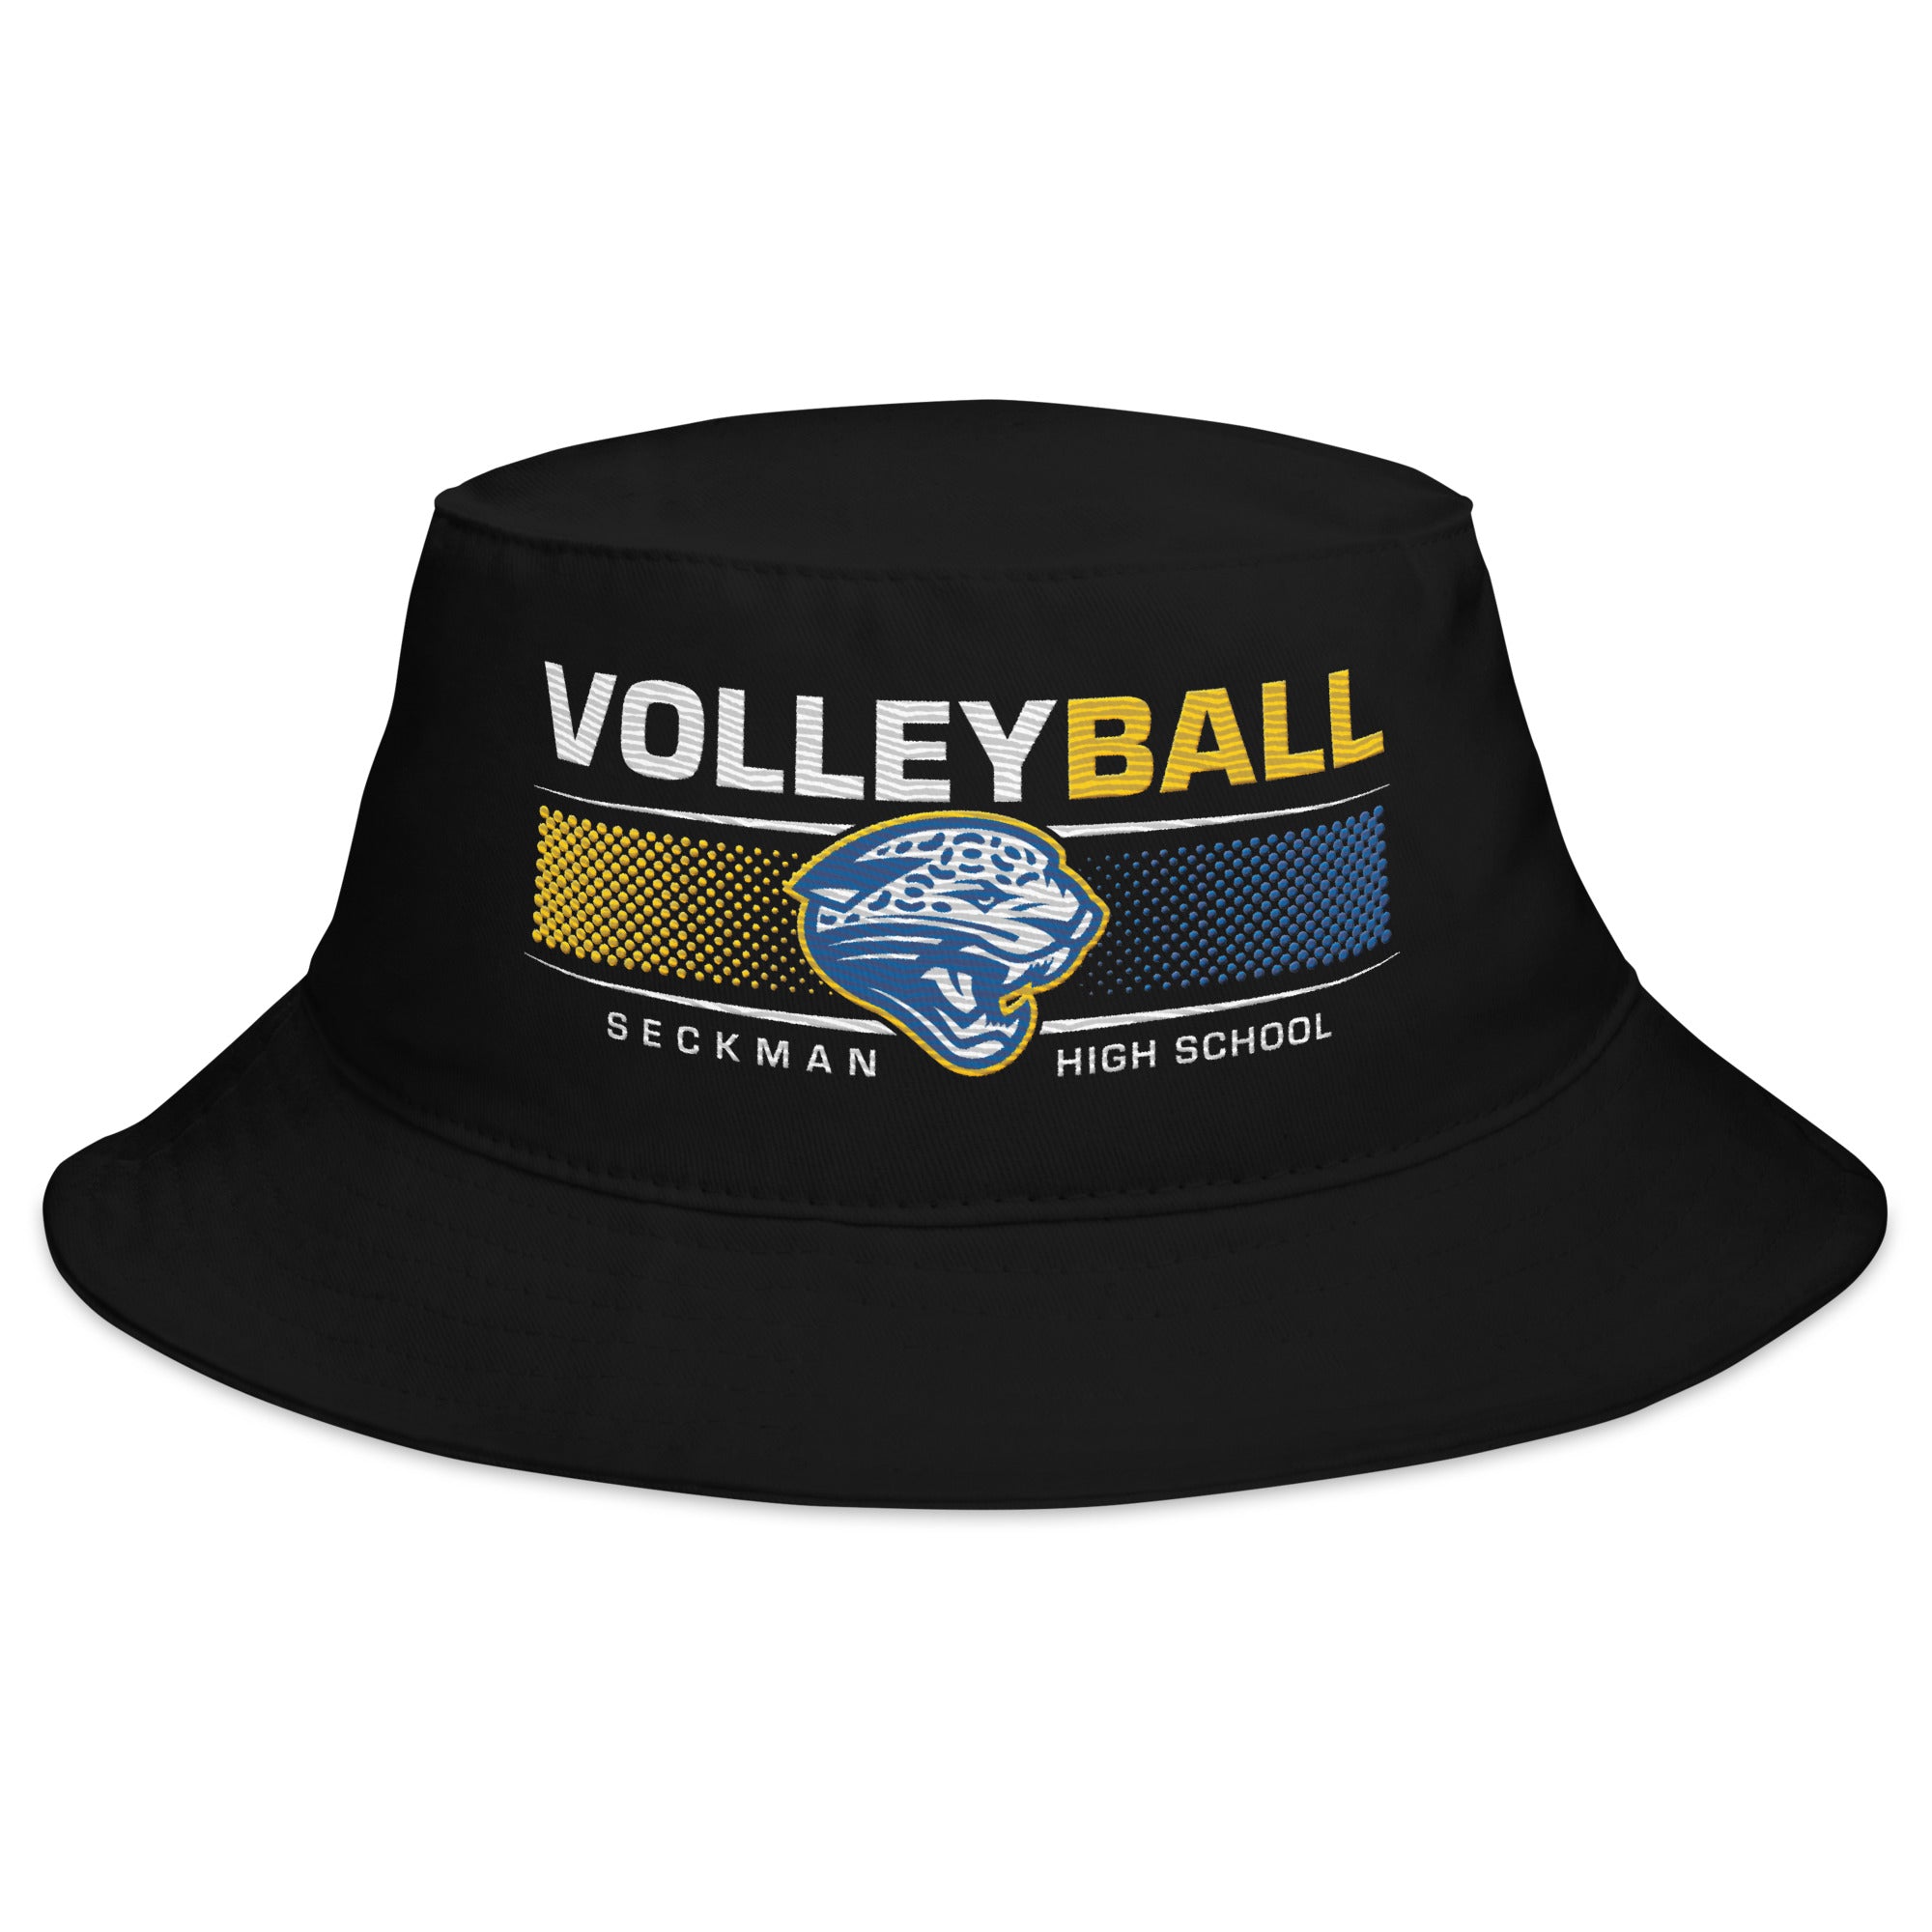 Seckman Volleyball Bucket Hat